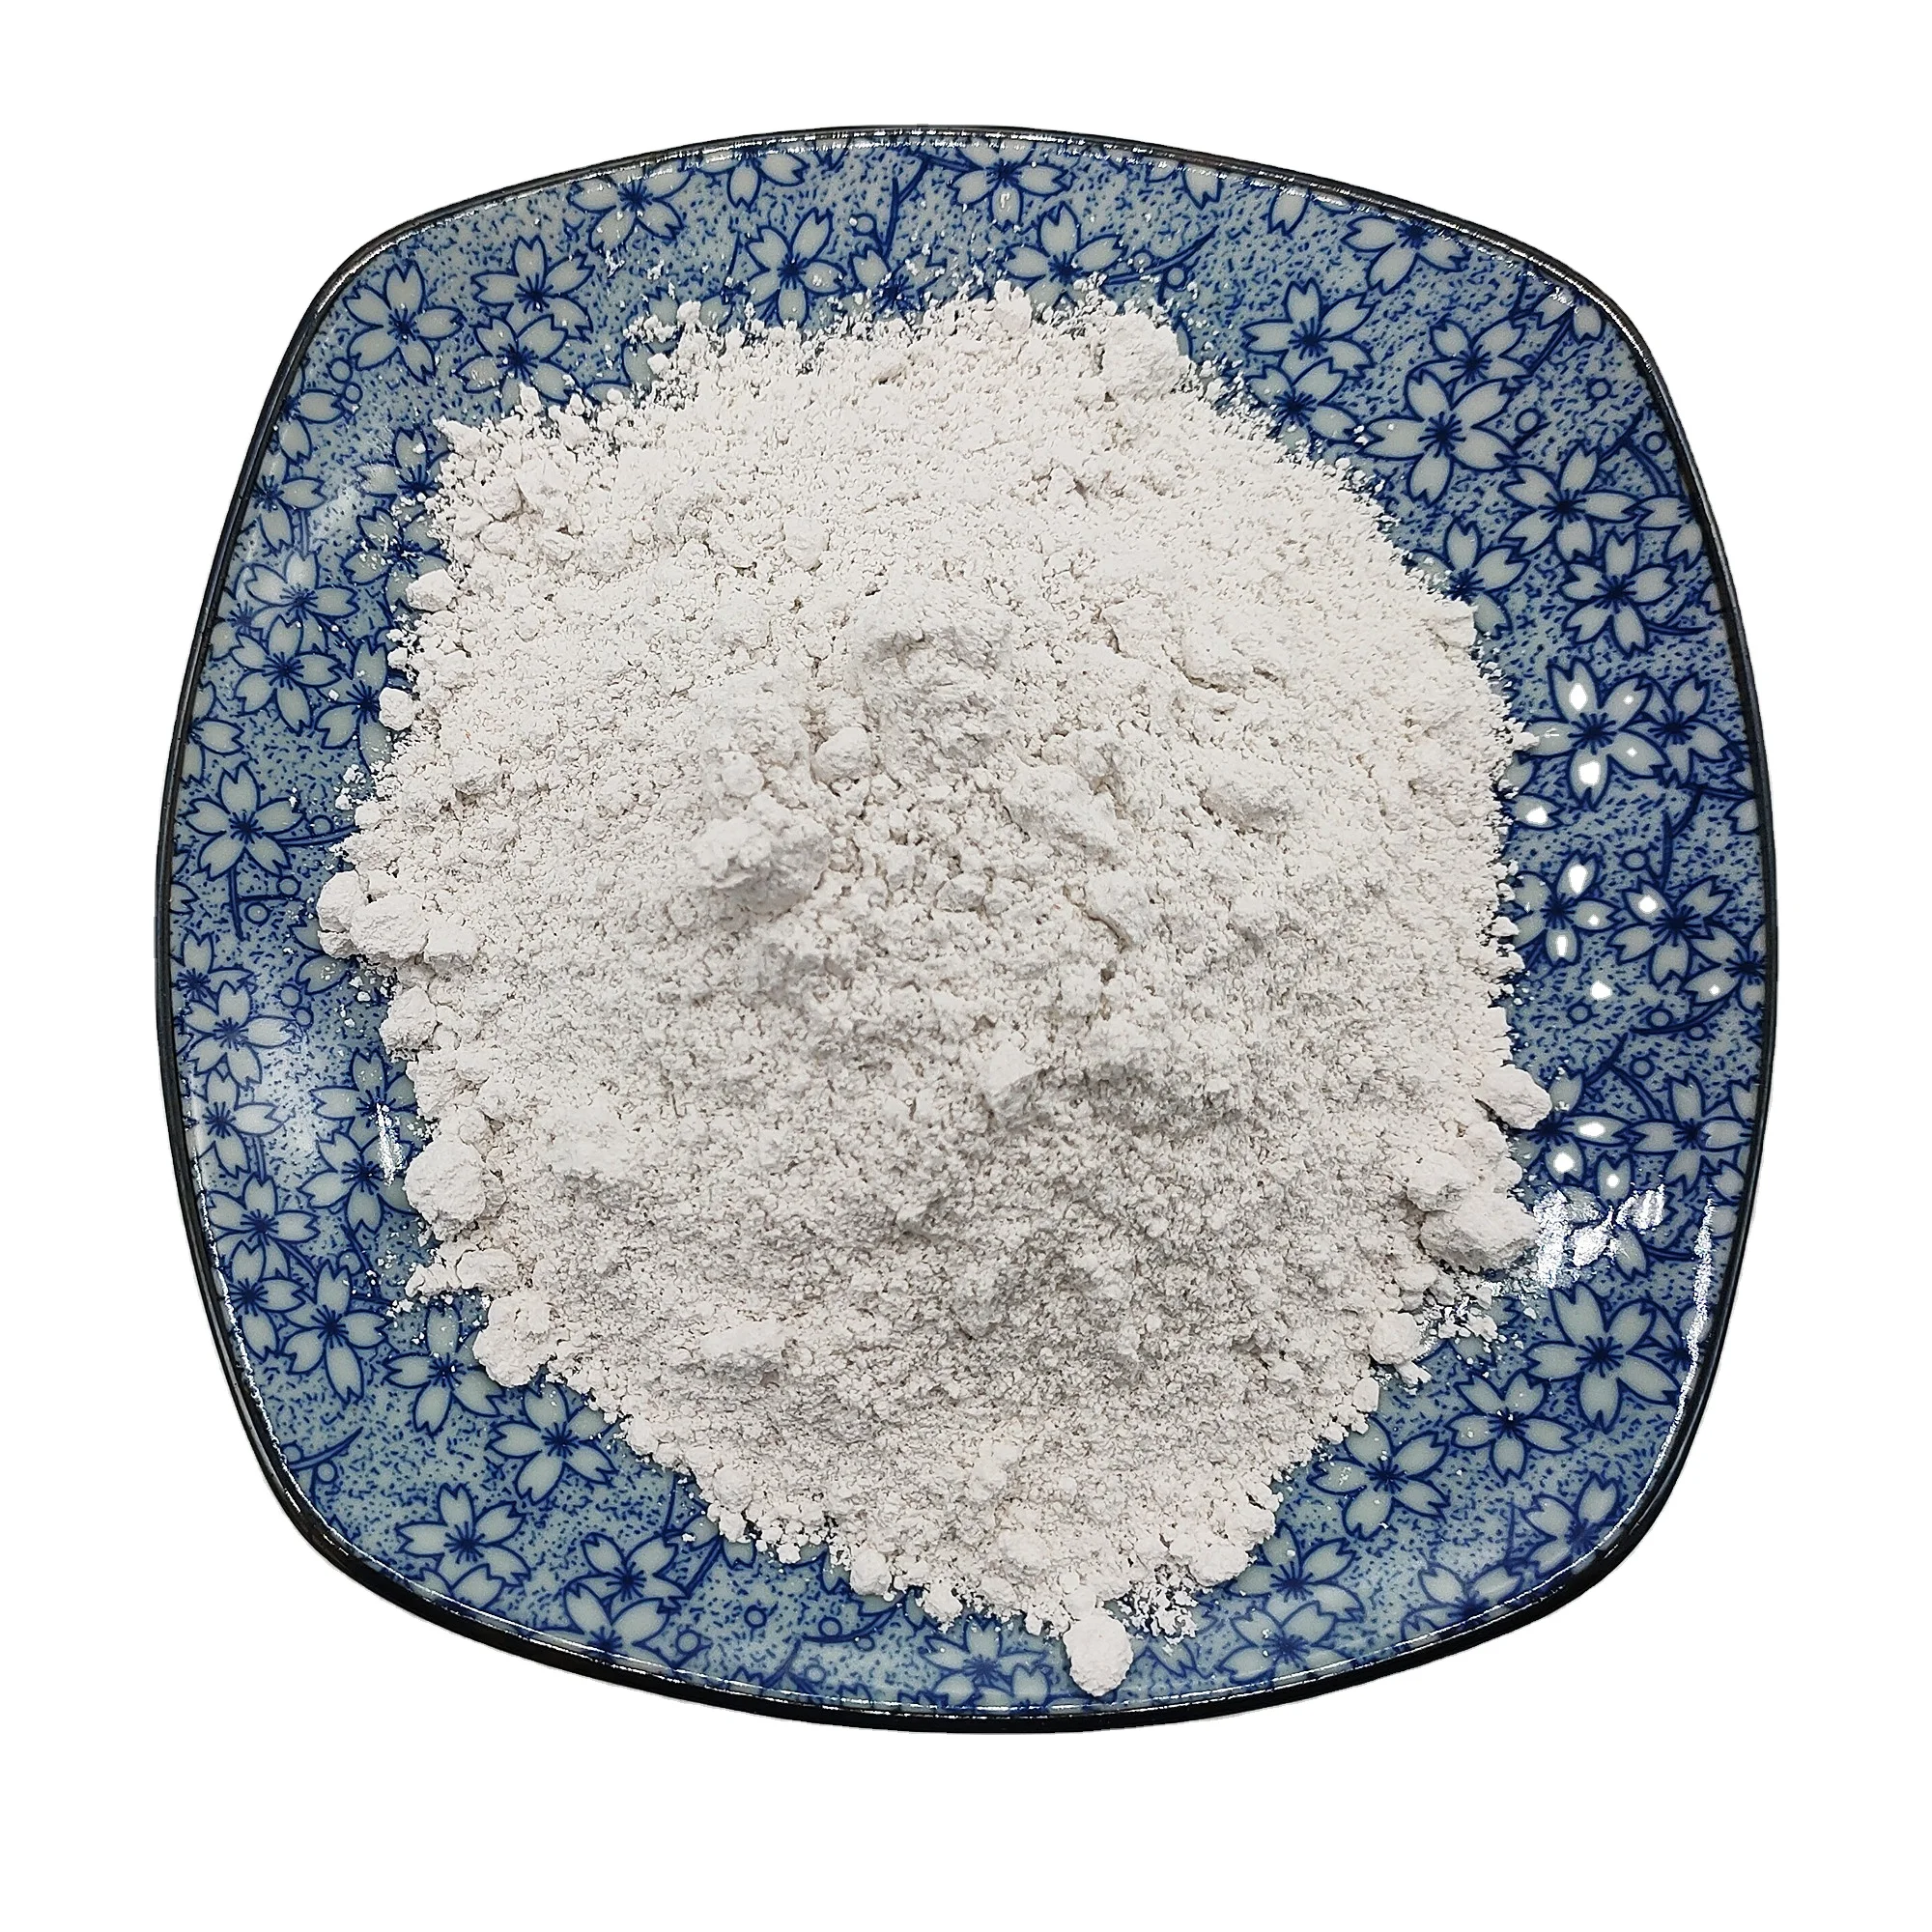 
2021 Top quality high pure sepiolite powder clay  (1600254776229)